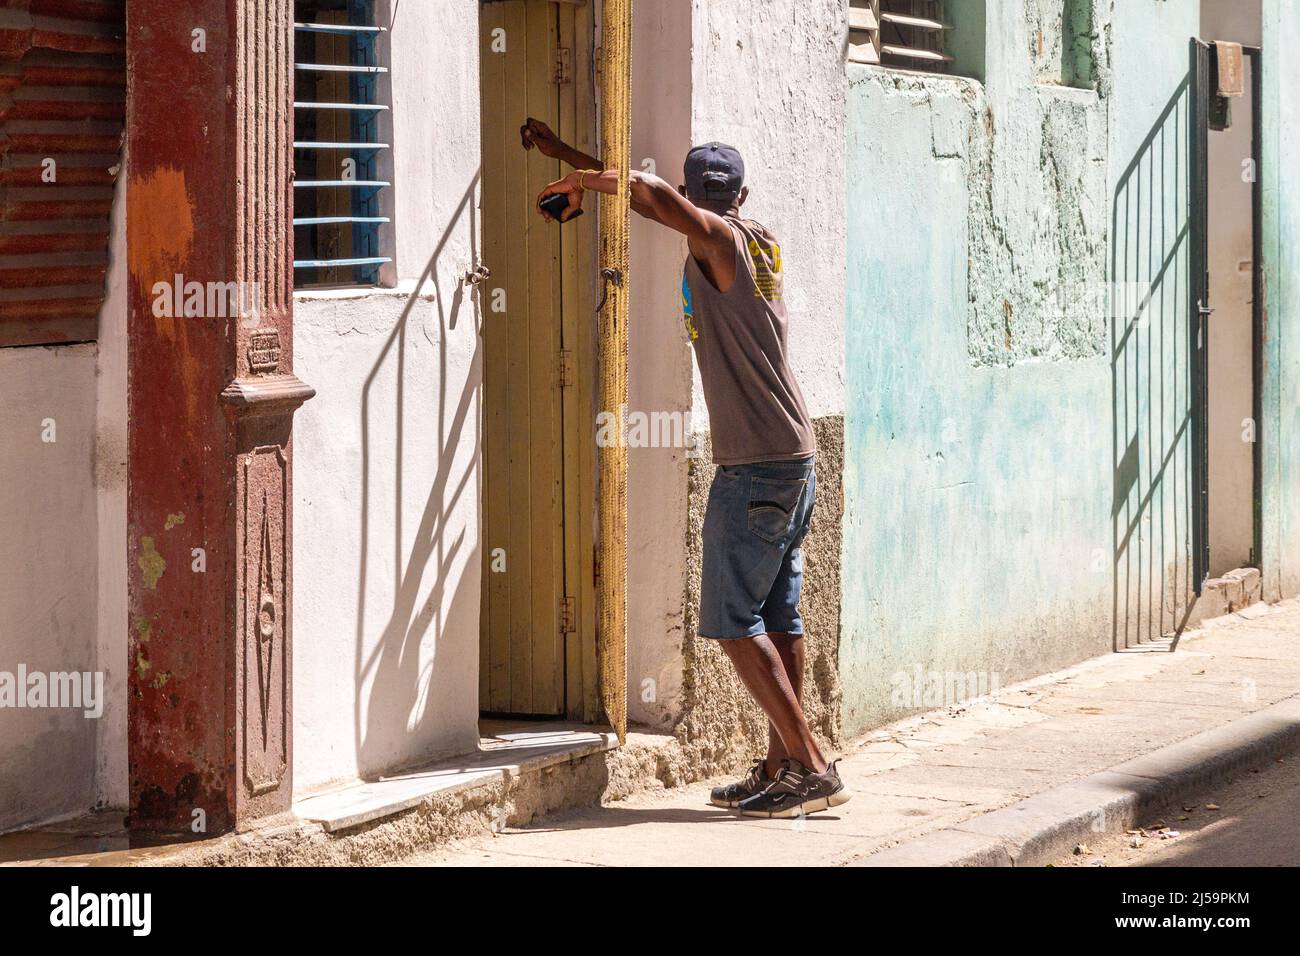 Un sottile uomo cubano afro-caraibico sta aspettando alla porta di una casa. È appoggiato su una griglia metallica protettiva che è a metà aperta. Stile di vita di persone reali io Foto Stock